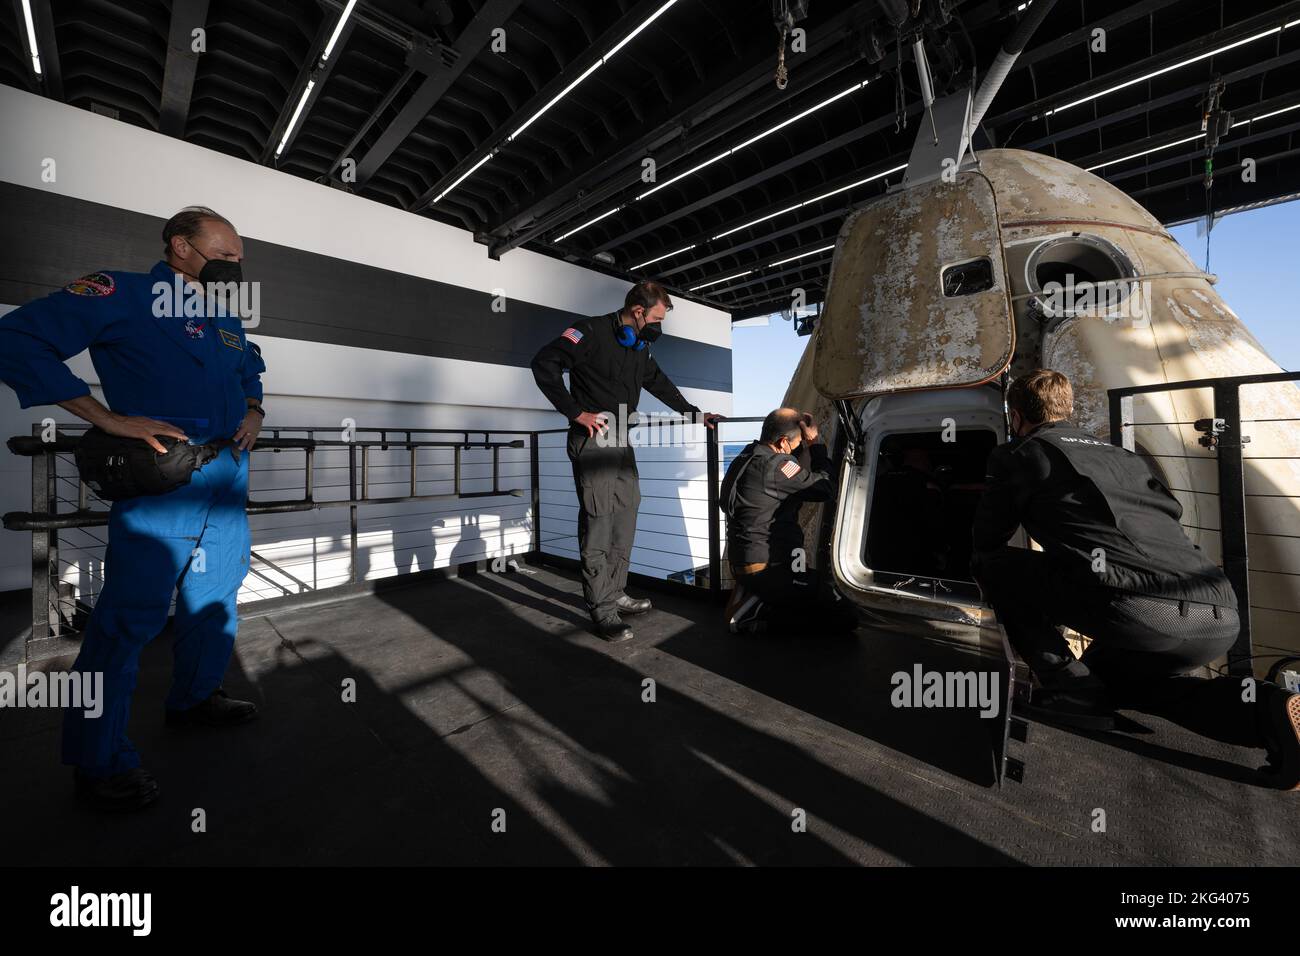 SpaceX Crew-4 Splashdown della NASA. Il chirurgo di volo della NASA Joe Dervay, a sinistra, guarda come le squadre SpaceX aiutano i membri dell'equipaggio 4 a bordo della navicella spaziale SpaceX Crew Dragon Freedom a bordo della nave di recupero SpaceX Megan nell'Oceano Atlantico al largo della costa di Jacksonville, Florida, Venerdì, 14 ottobre 2022. Gli astronauti della NASA Kjell Lindgren, Robert Hines, Jessica Watkins e l'astronauta dell'ESA (Agenzia spaziale europea) Samantha Cristoforetti tornano dopo 170 giorni nello spazio come parte delle Expeditions 67 e 68 a bordo della Stazione spaziale Internazionale. Foto Stock